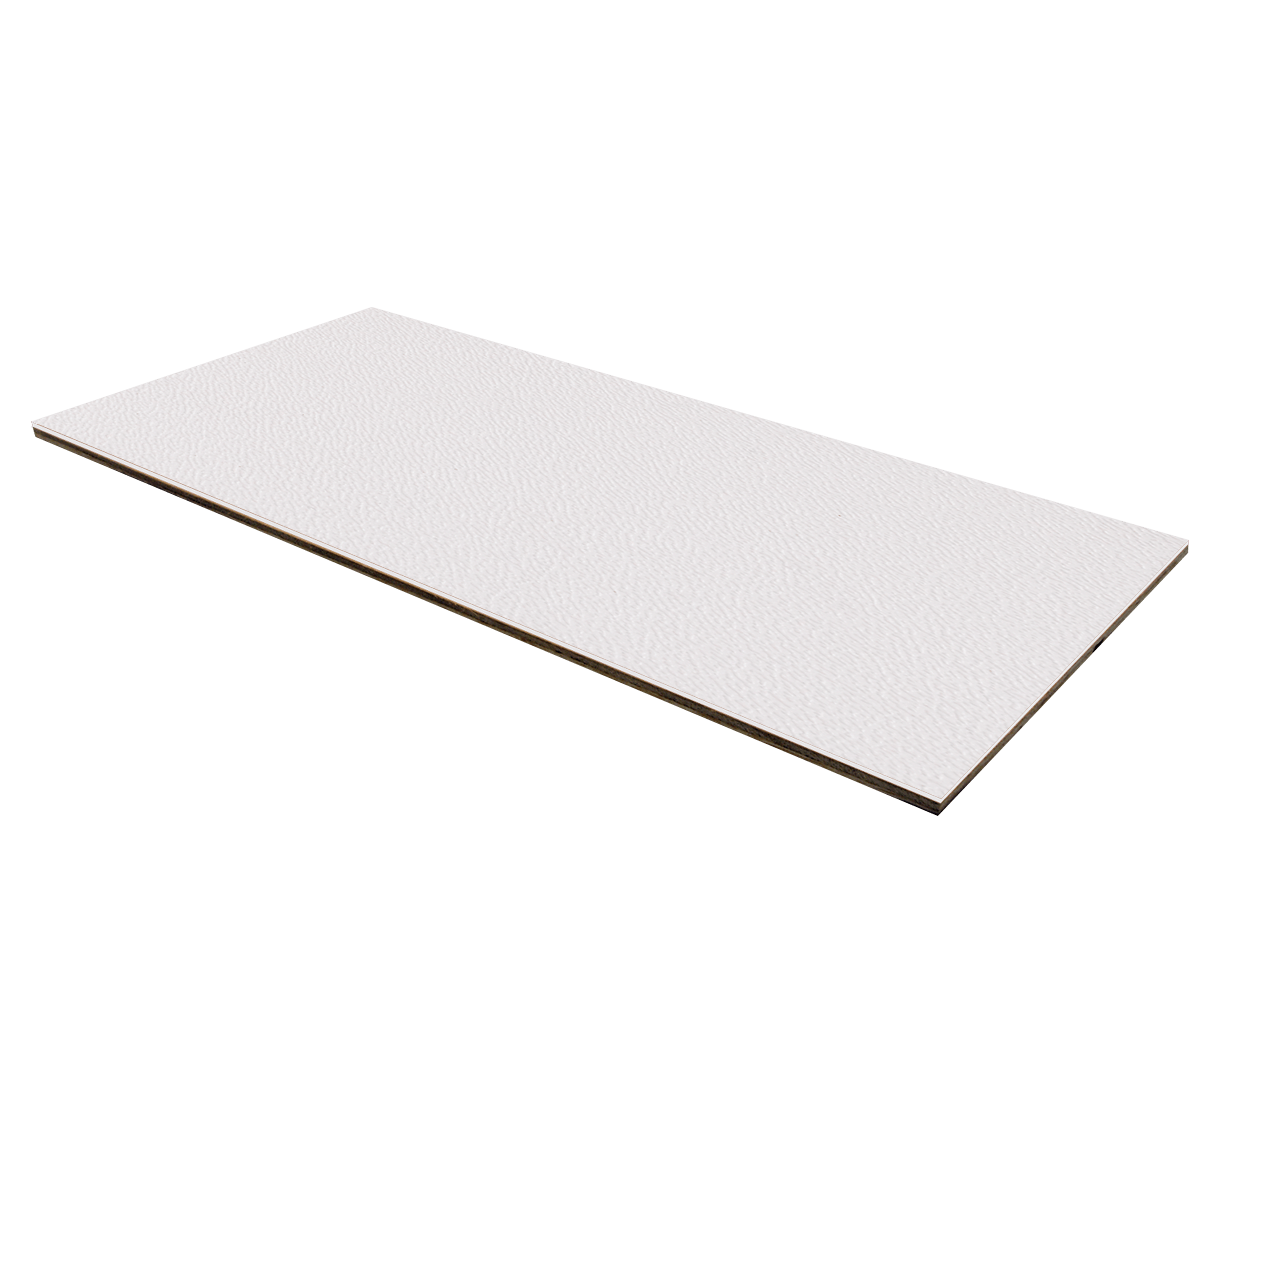 1/8" Luan Plywood ABS Laminate - White